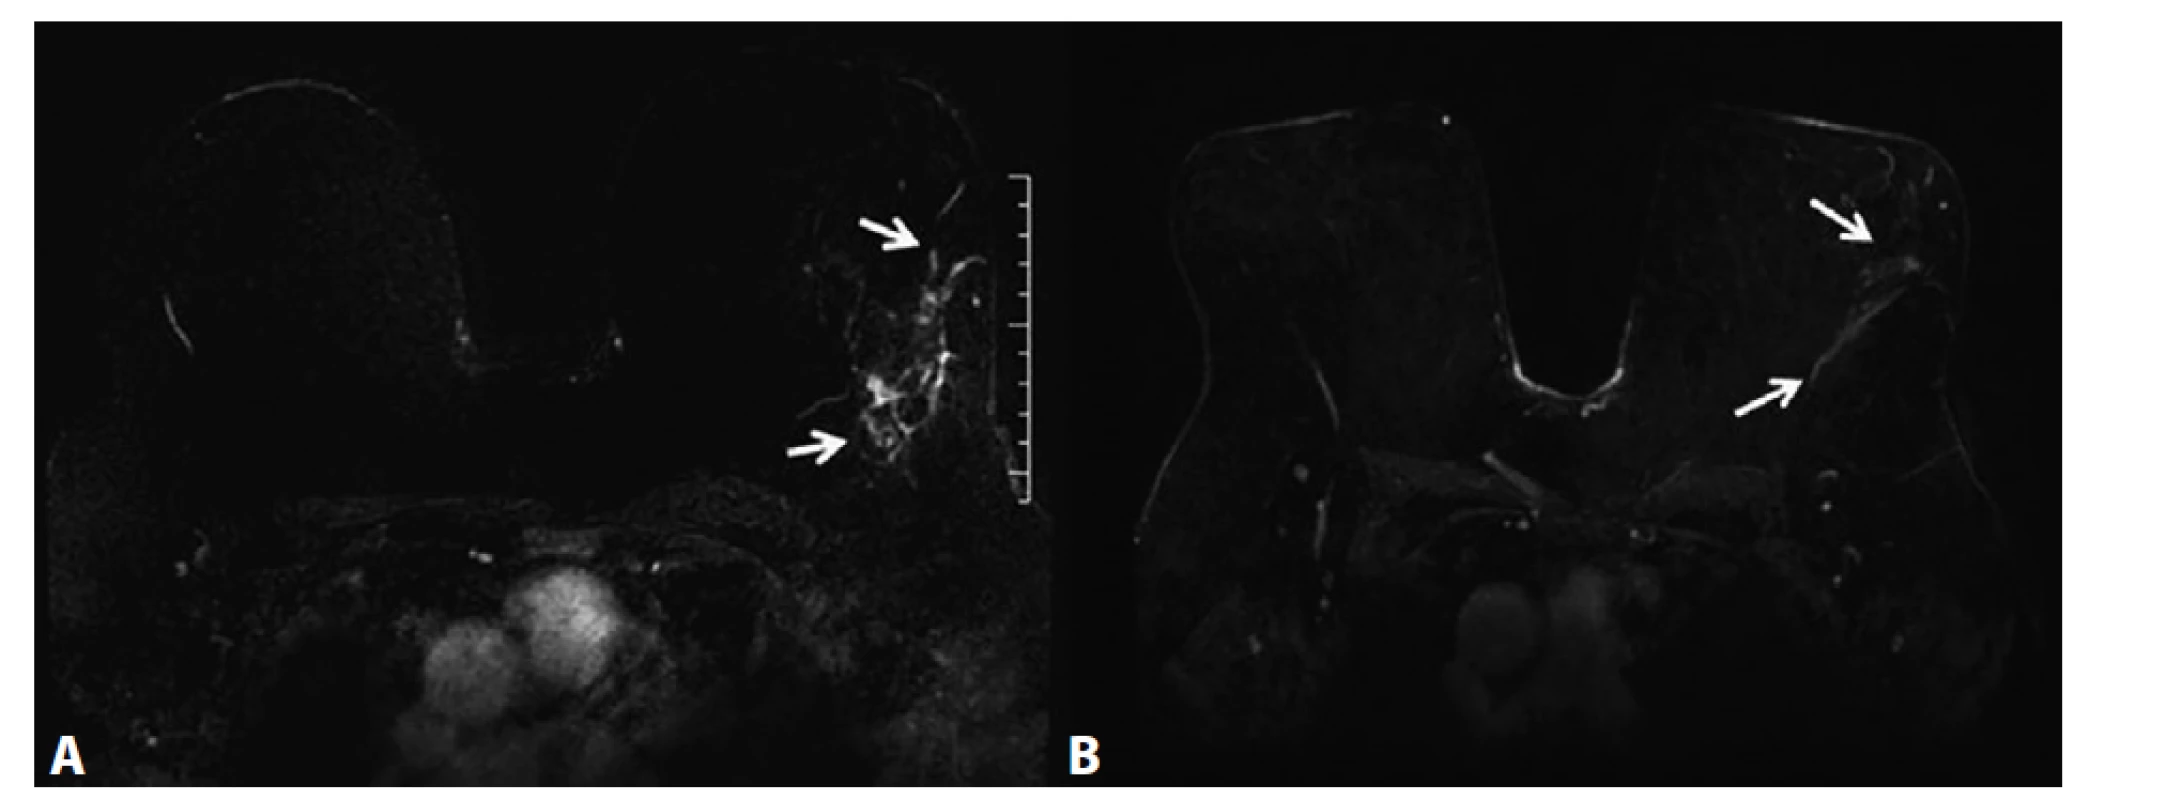 MRM, T1FS ax, kontrastní studie VIBRANT, 3. postkontrastní sekvence, subtrakce − neložiskové sycení ILC<br>
A) Před NCHT. Neložiskové sycení žlázy (NME) v levém prsu odpovídá maligní infiltraci žlázy (rozsah NME vyznačený
dvěma šipkami). B) Po NCHT. Výrazná regrese patologického NME v levém prsu (vyznačeno dvěma šipkami).<br>
Fig. 4: MRI, T1FS ax, VIBRANT contrast study, 3rd post-contrast sequence, subtraction − non-mass enhancement, ILC.<br>
A) Before NCT. Extensive non-mass enhancement (NME) caudally to the ILC lesion, corresponds to malignant disease
in the gland (the extent of NME of the tumour is depicted by two arrows). B) After NCT. Significant regression of pathological
NME of the left breast (depicted by two arrows).